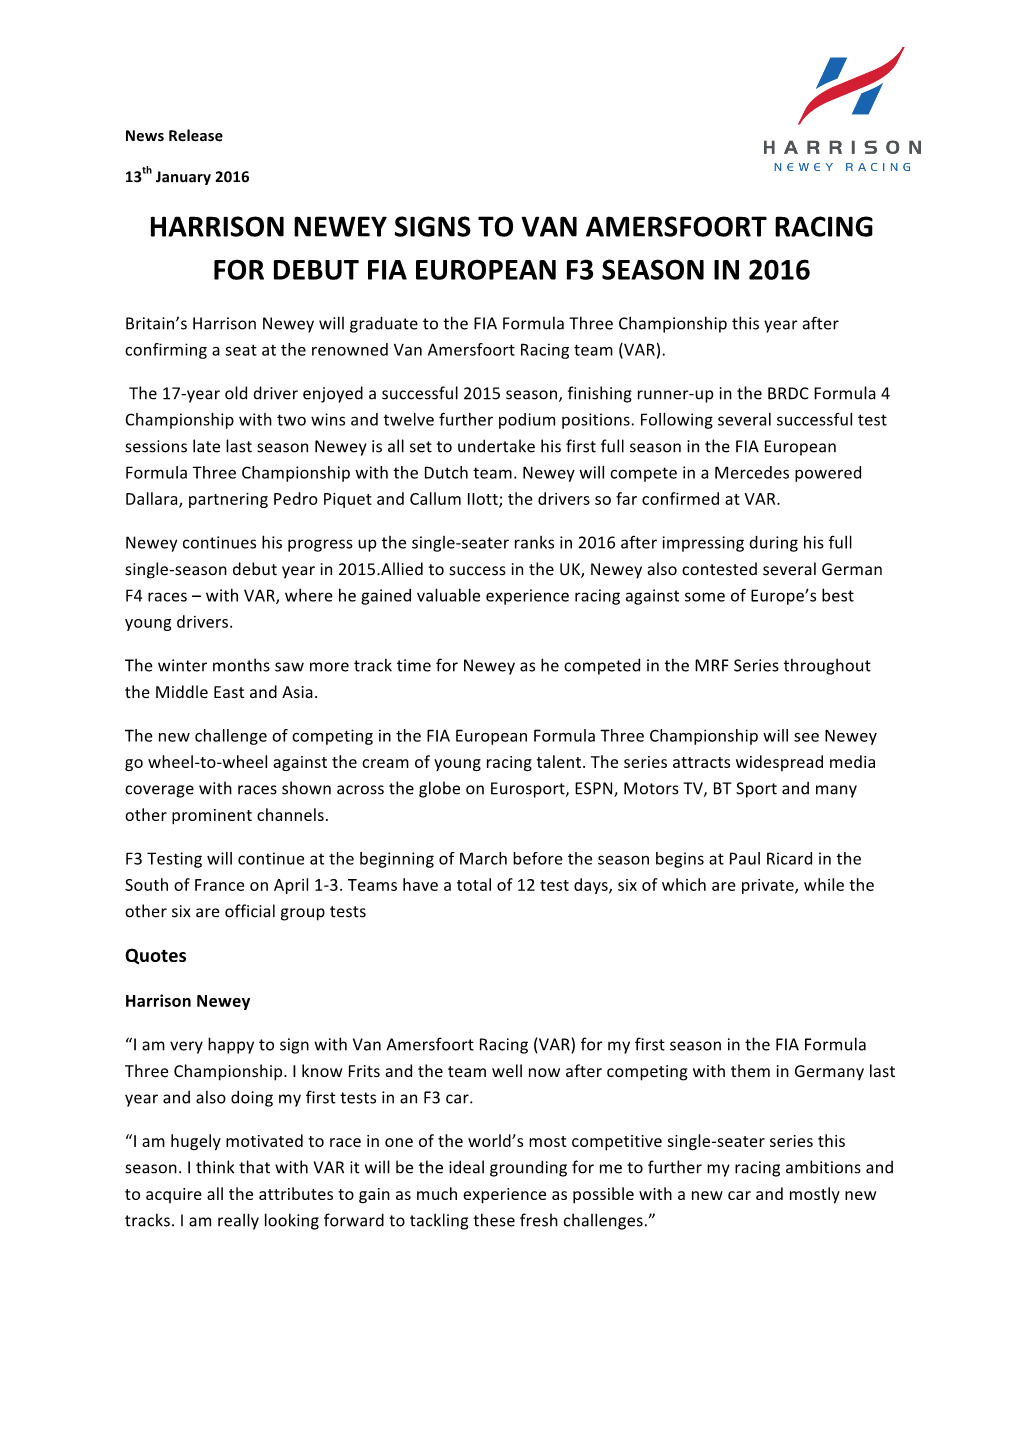 Harrison Newey Signs to Van Amersfoort Racing for Debut Fia European F3 Season in 2016